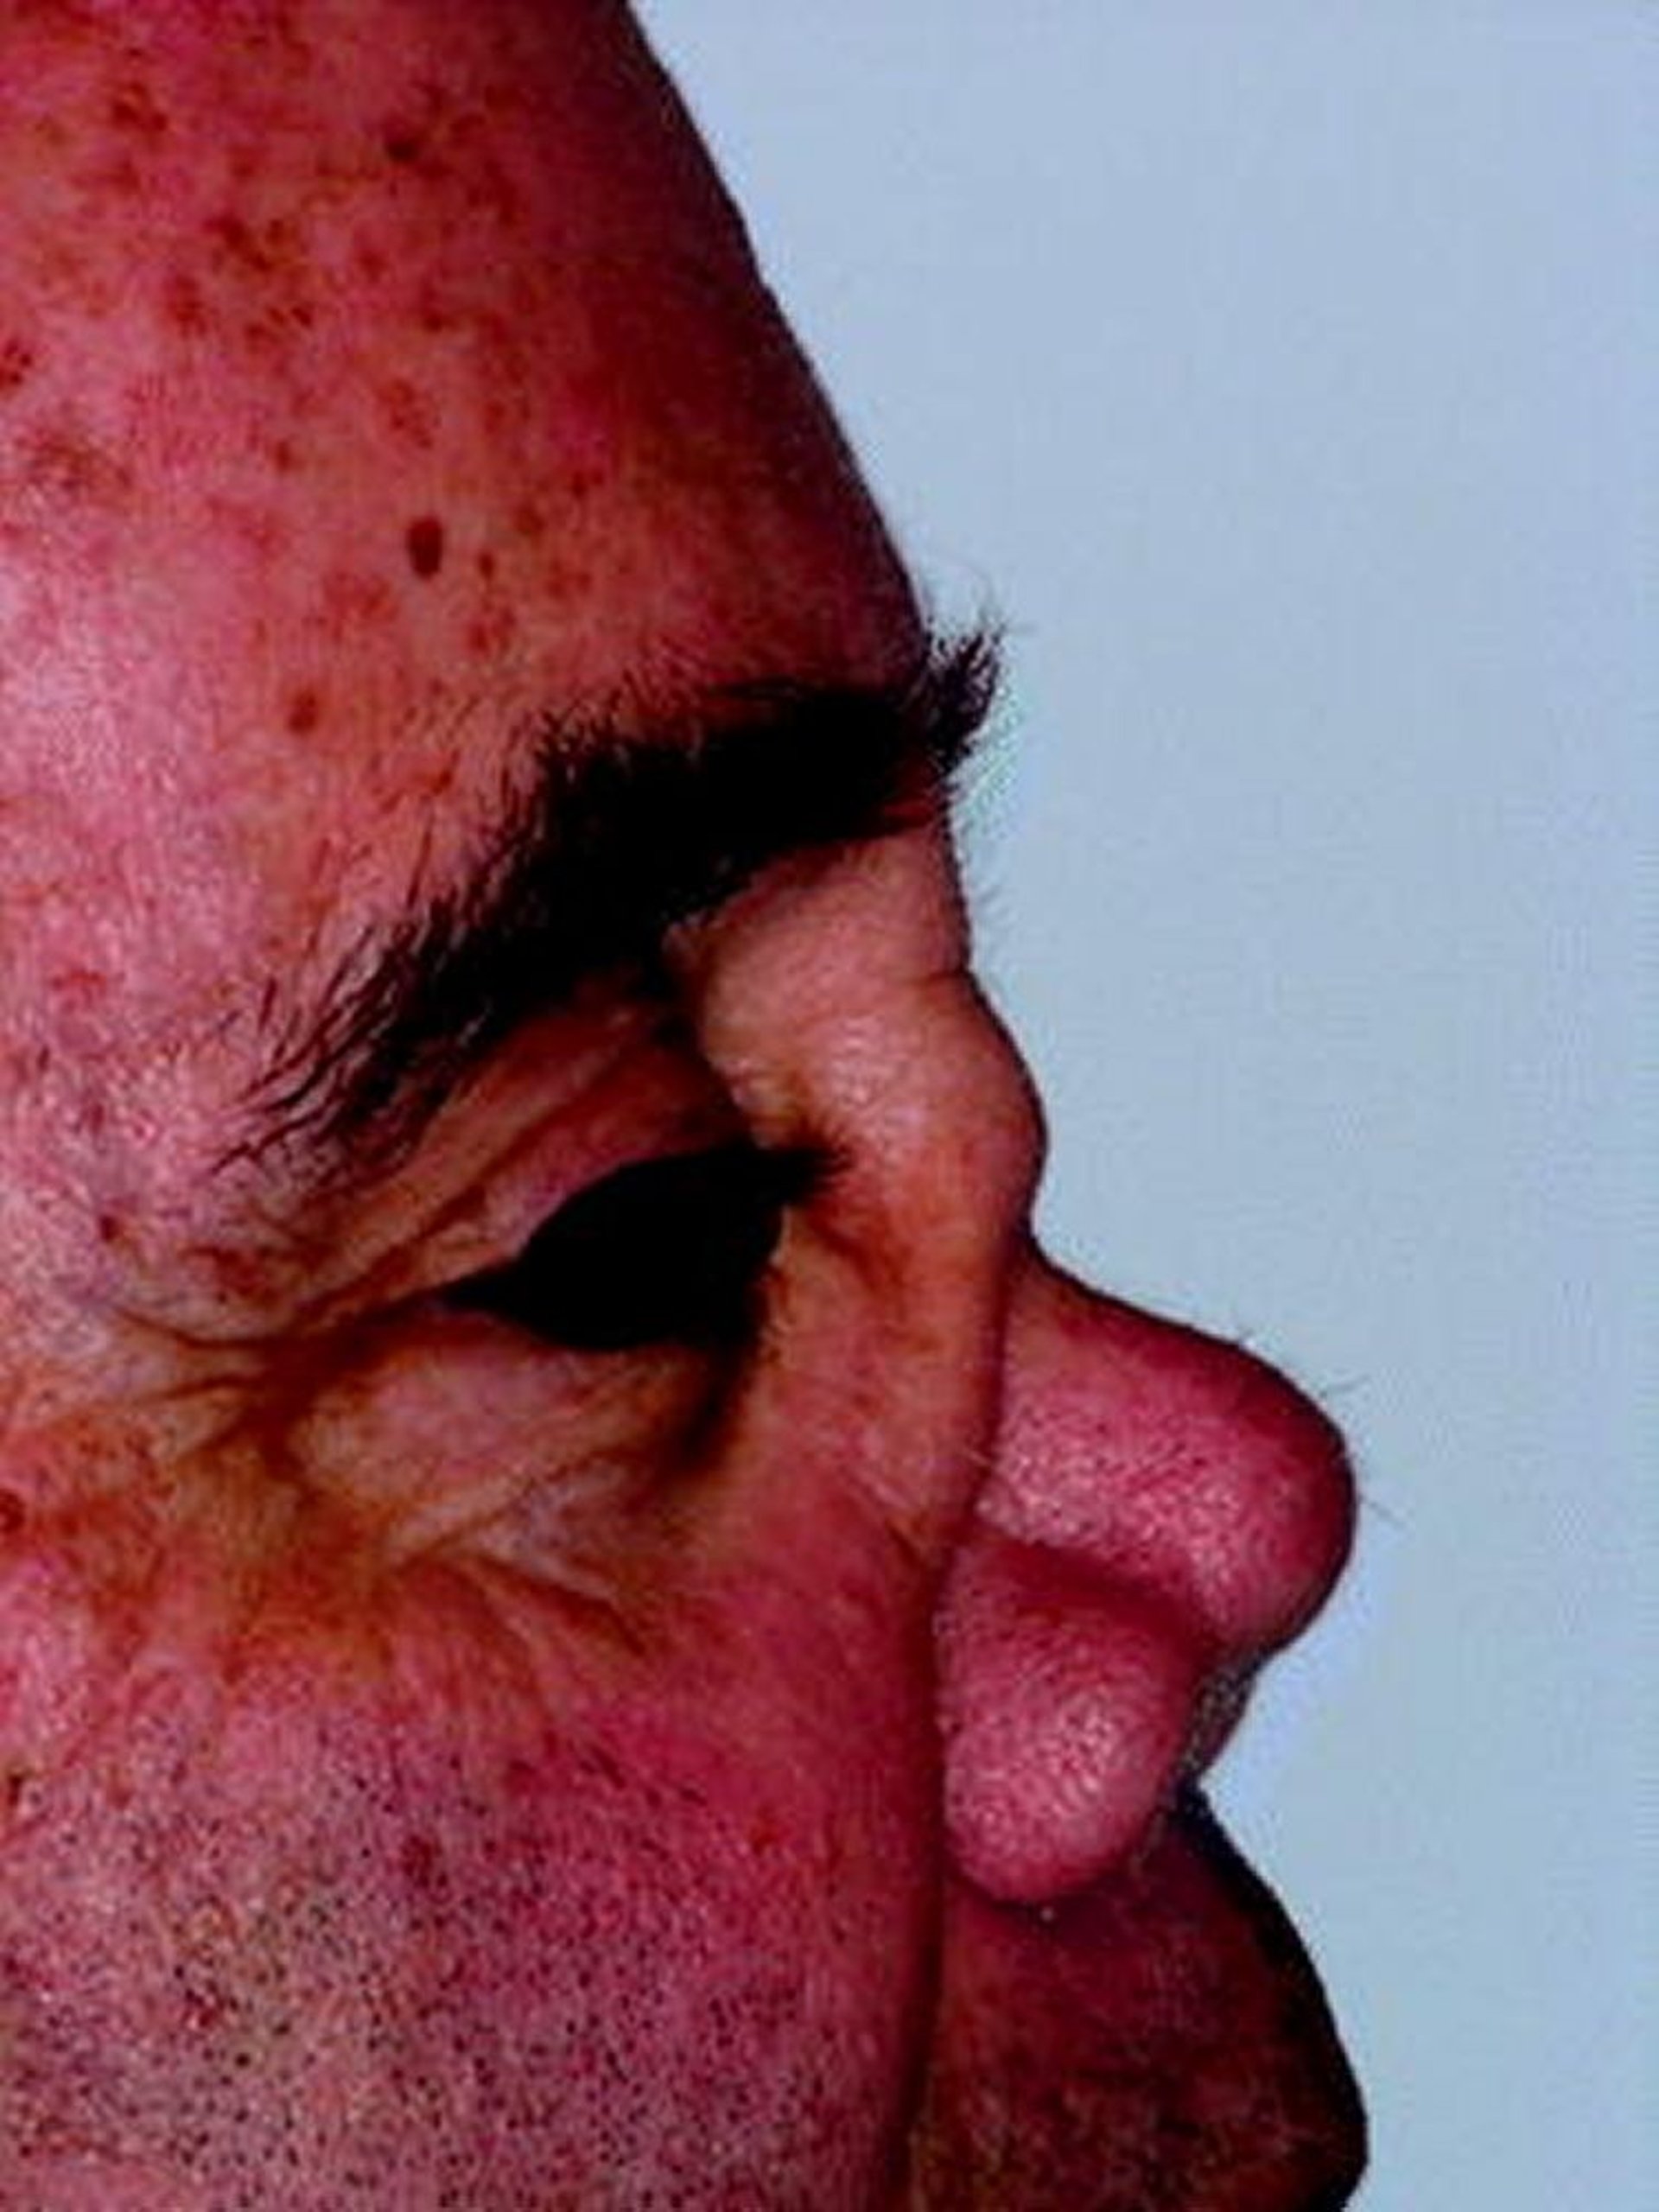 Седловидная деформация носа при ранулематозе с полиангиитом (ГПА)